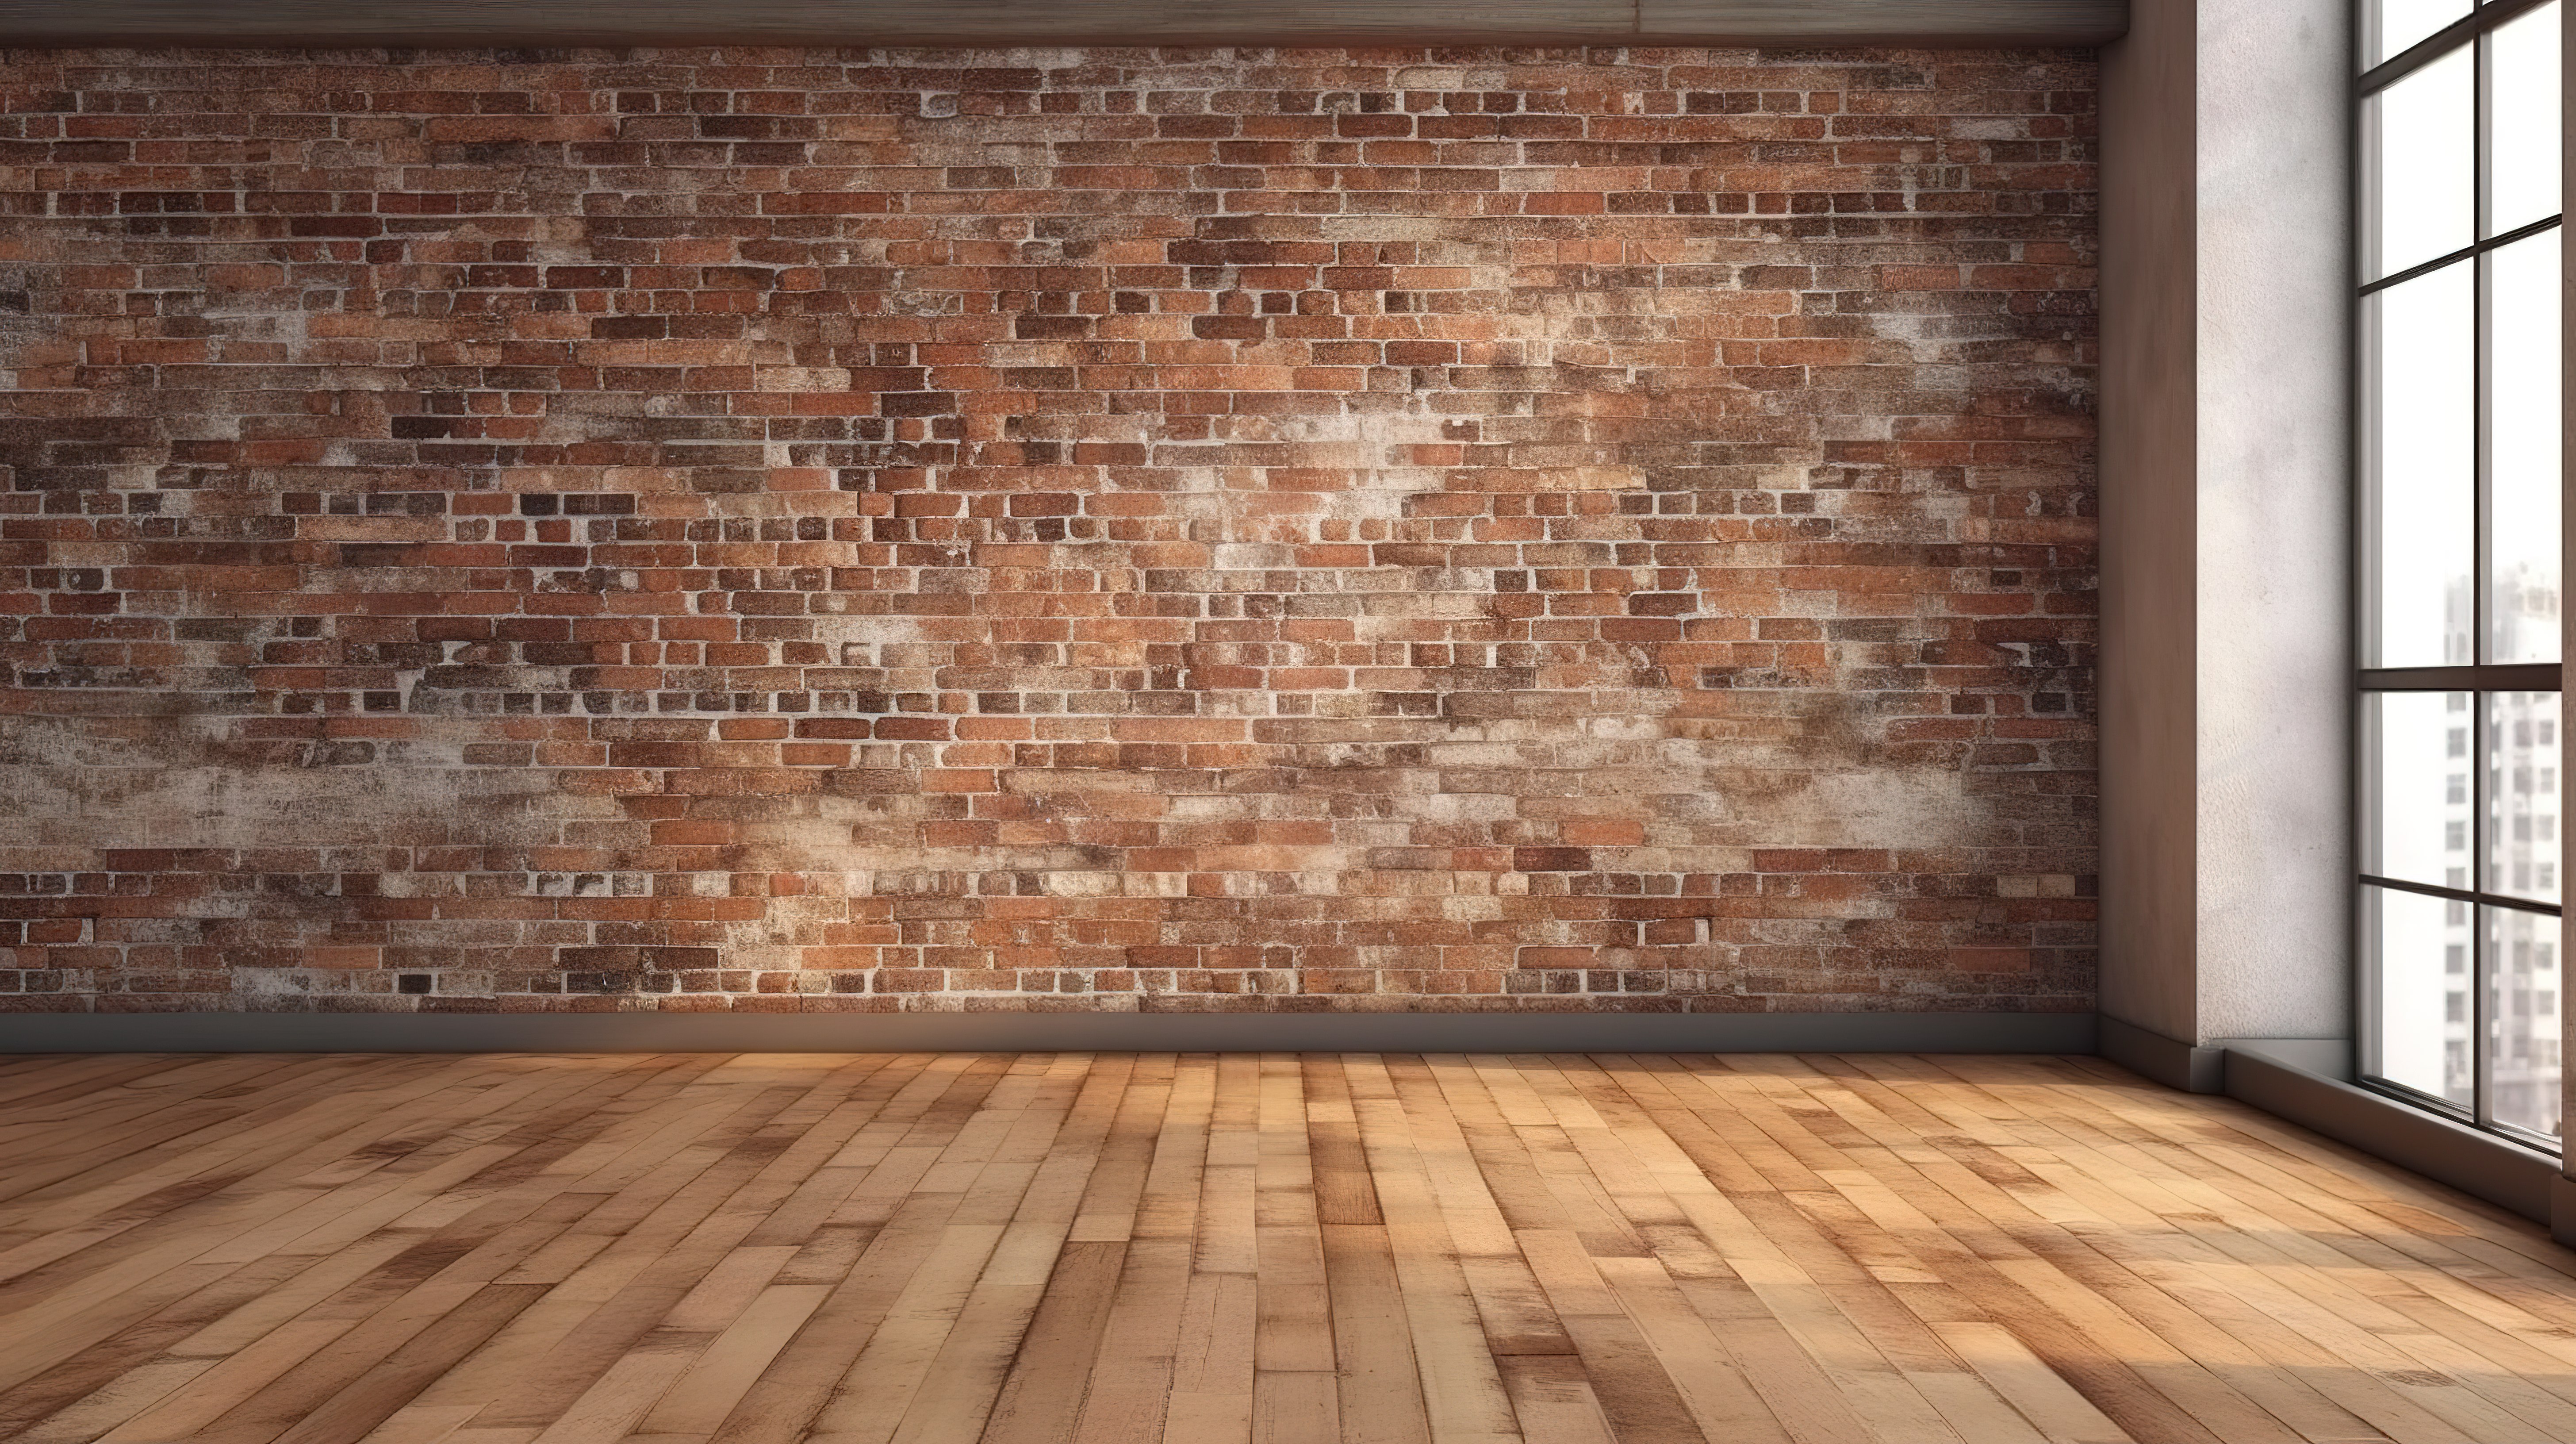 工业别致的木地板与阁楼风格房间的砖墙相遇图片